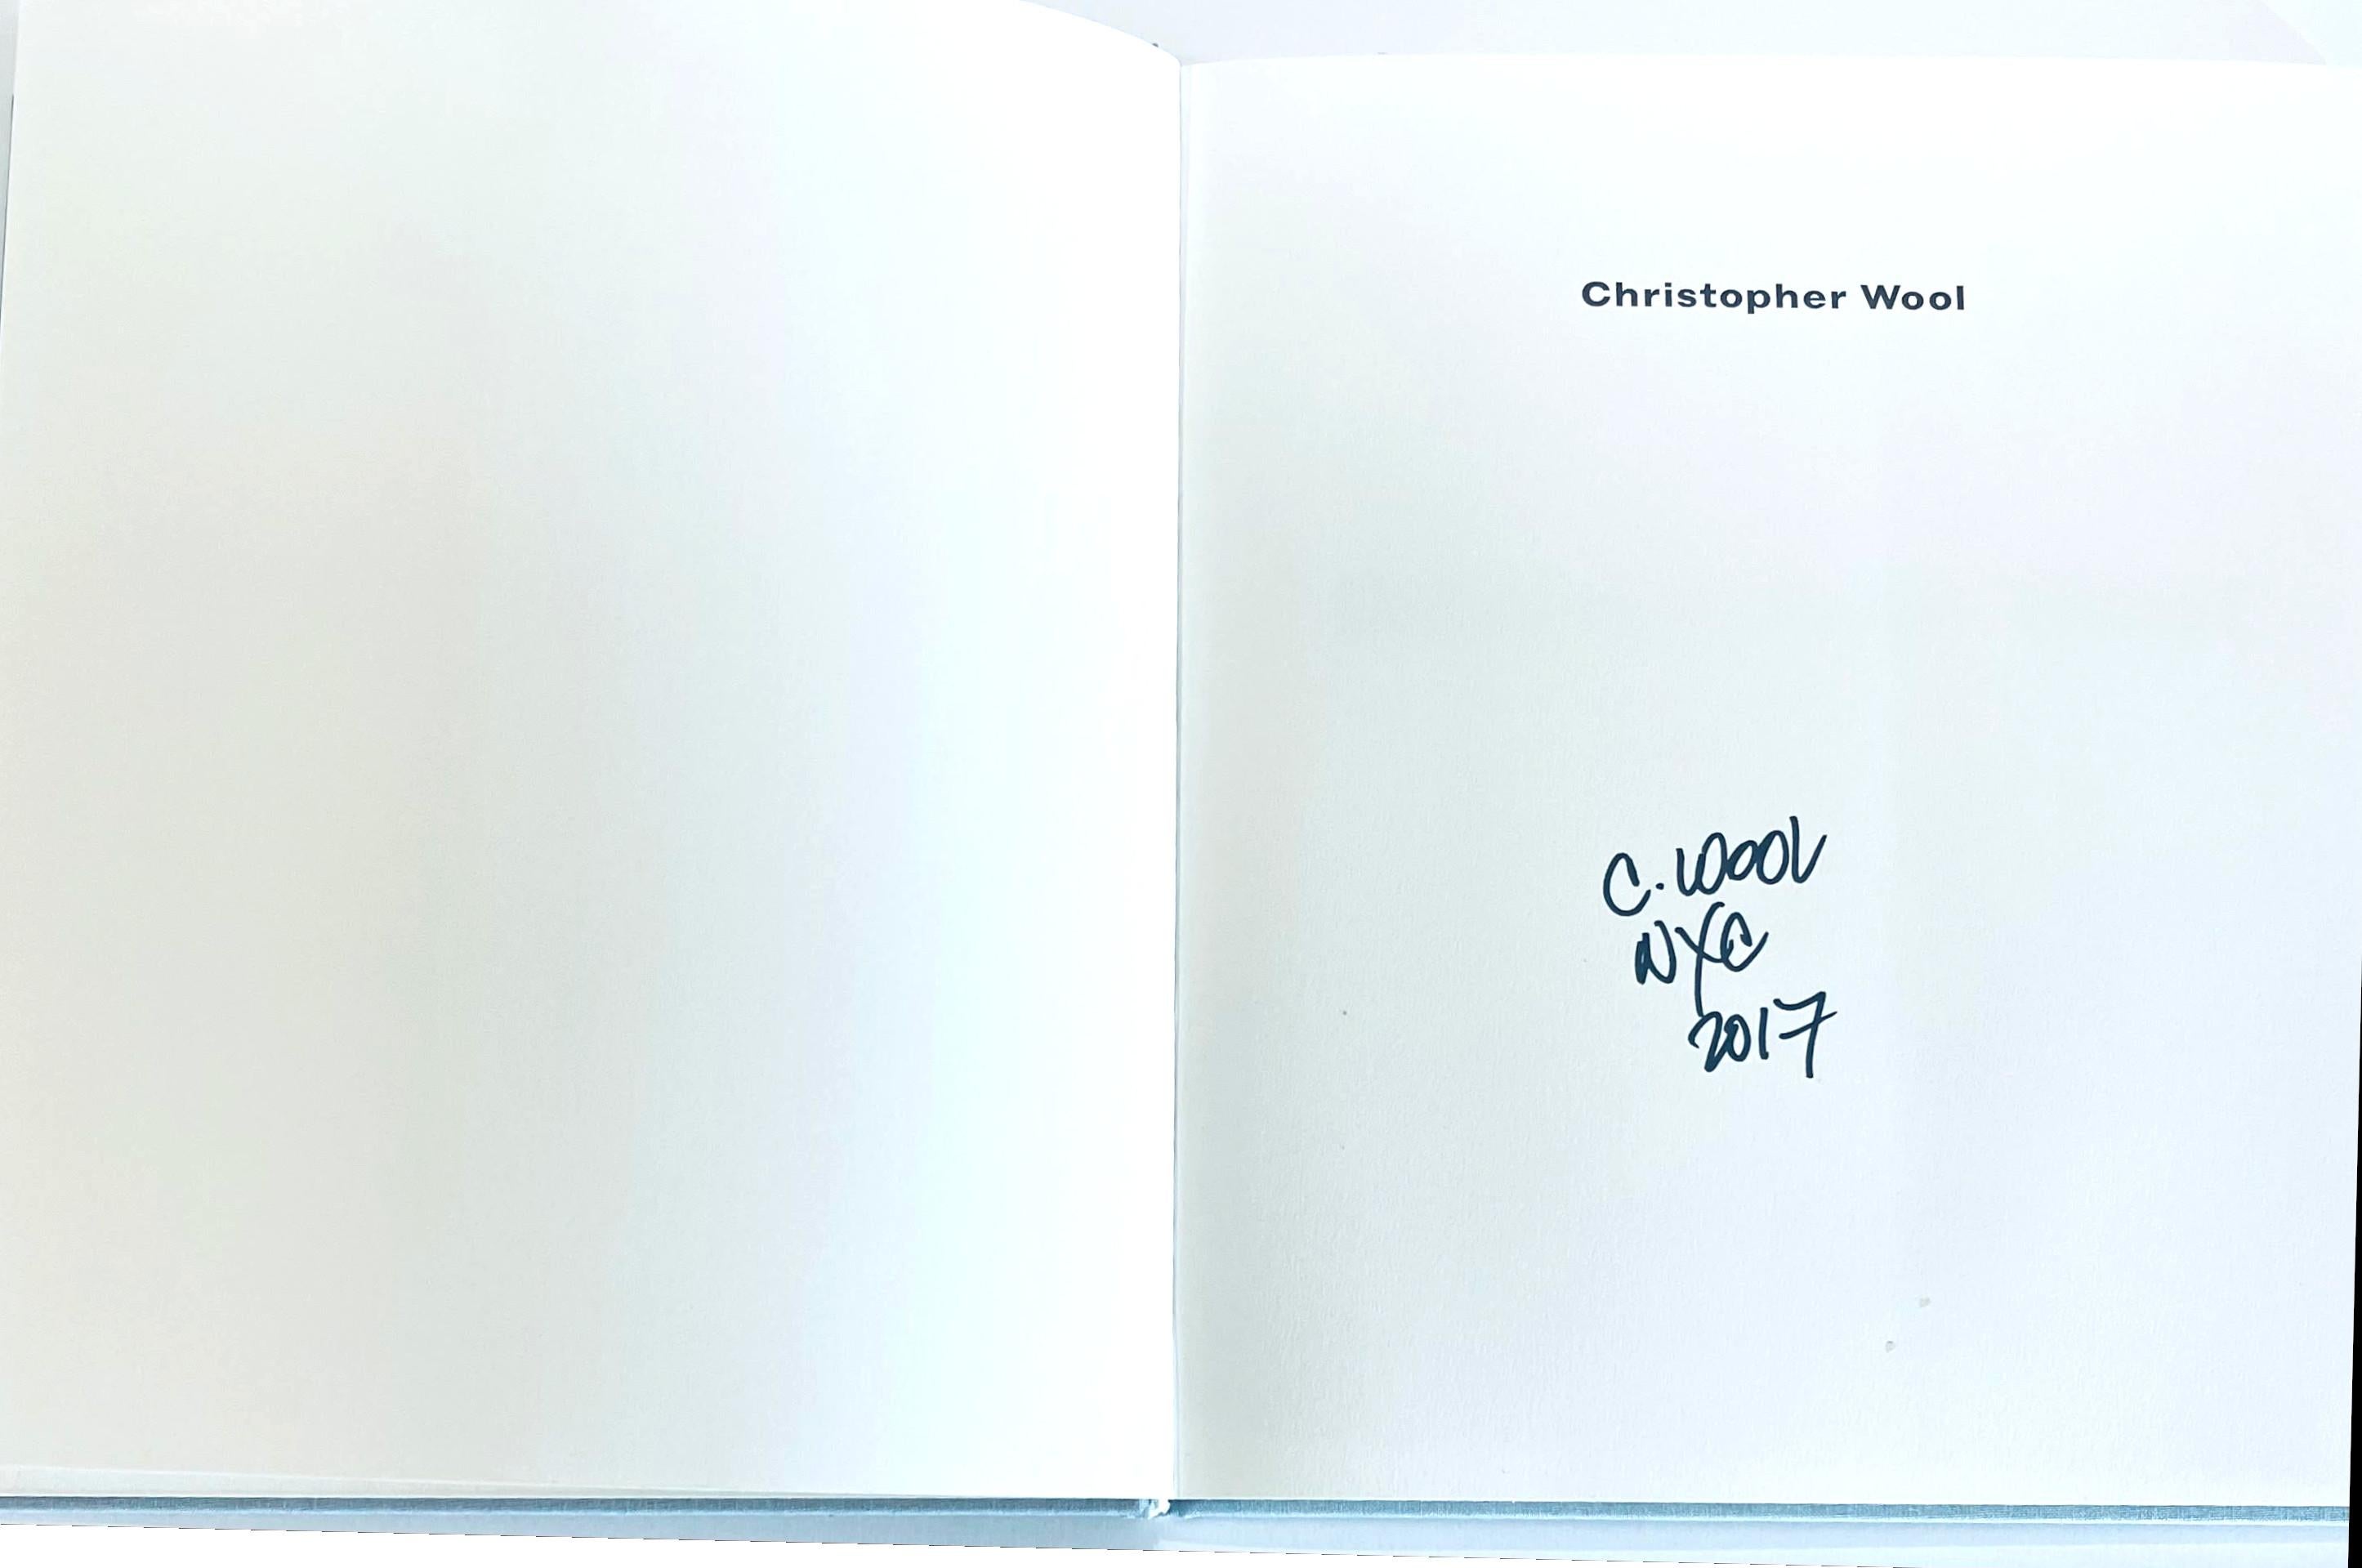 Christopher Wool (signé à la main par Christopher Wool), 2006
Monographie reliée en tissu (signée à la main par Christopher Wool)
Signé et daté à la main en 2017 par Christopher Wool sur la demi-page de titre.
12 × 10 × 1 pouces
Provenance
Signé en